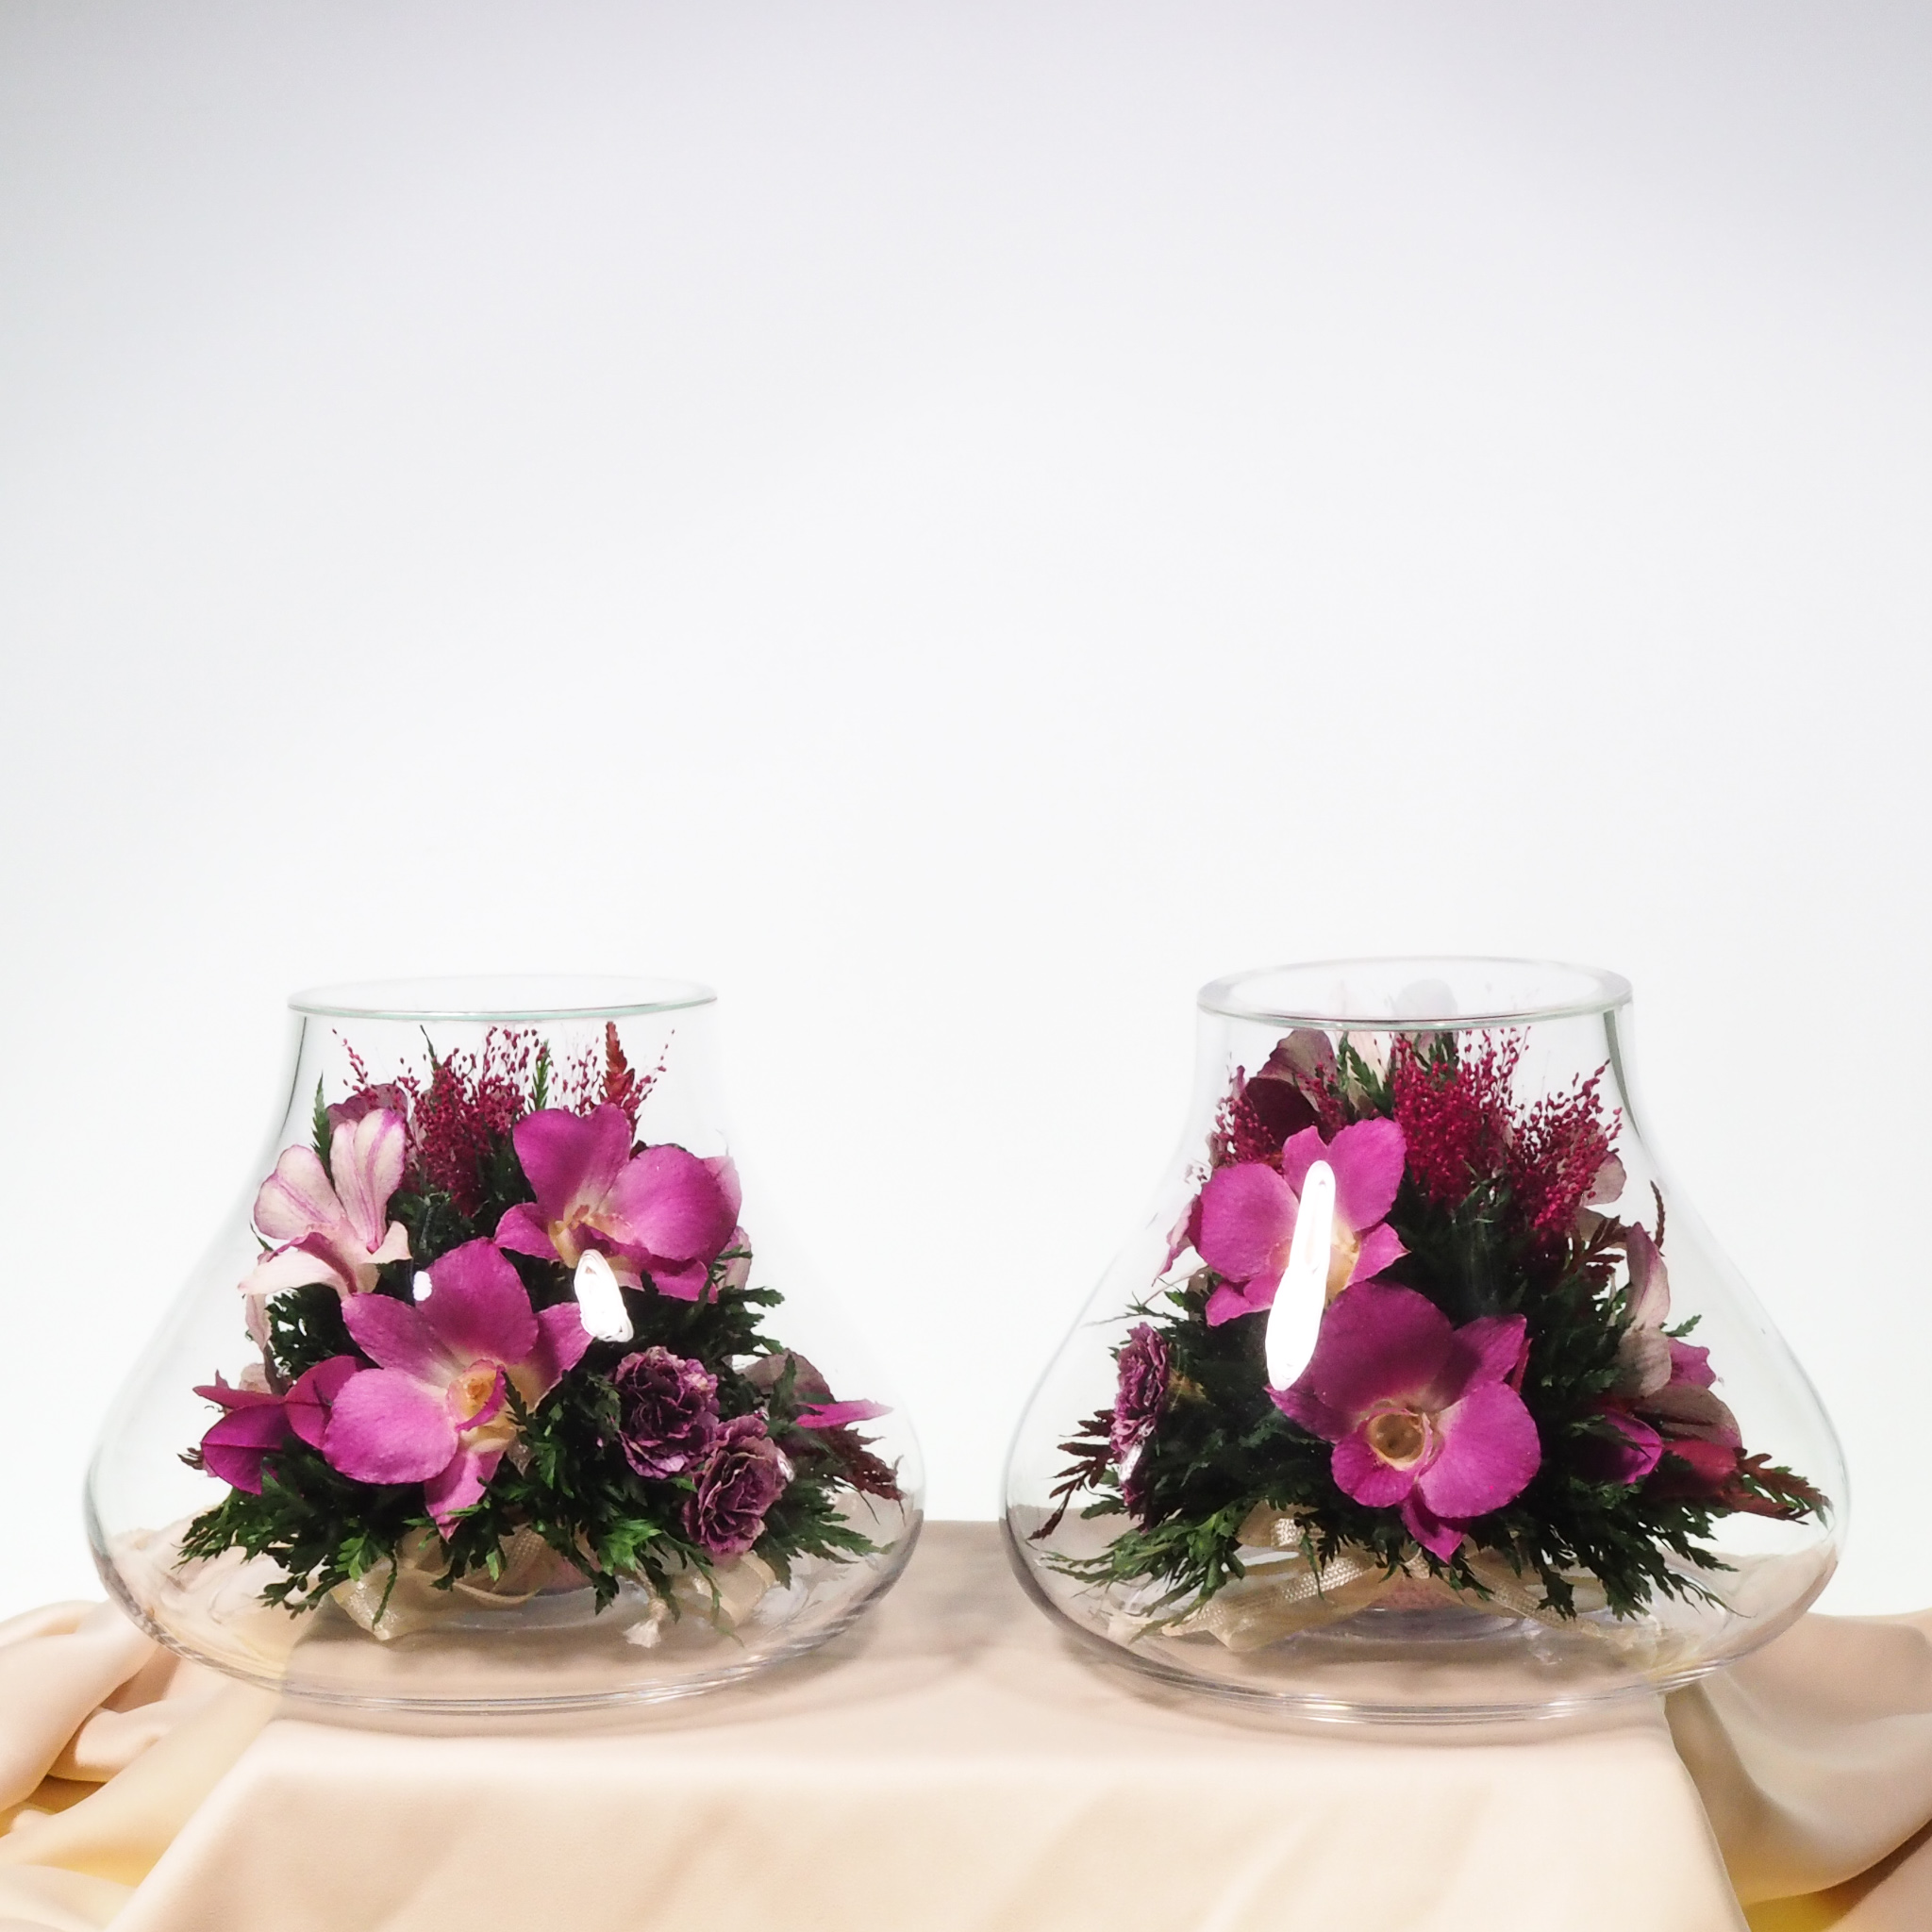 ชุดดอกไม้บูชาพระในโหลแก้วโดย Fi’ora Thailand (2 ชิ้นต่อชุด) (เท้าช้าง, orcids, Worship Collection). ดอกไม้ธรรมชาติ 100% อยู่ได้ถึง 5 ปี.